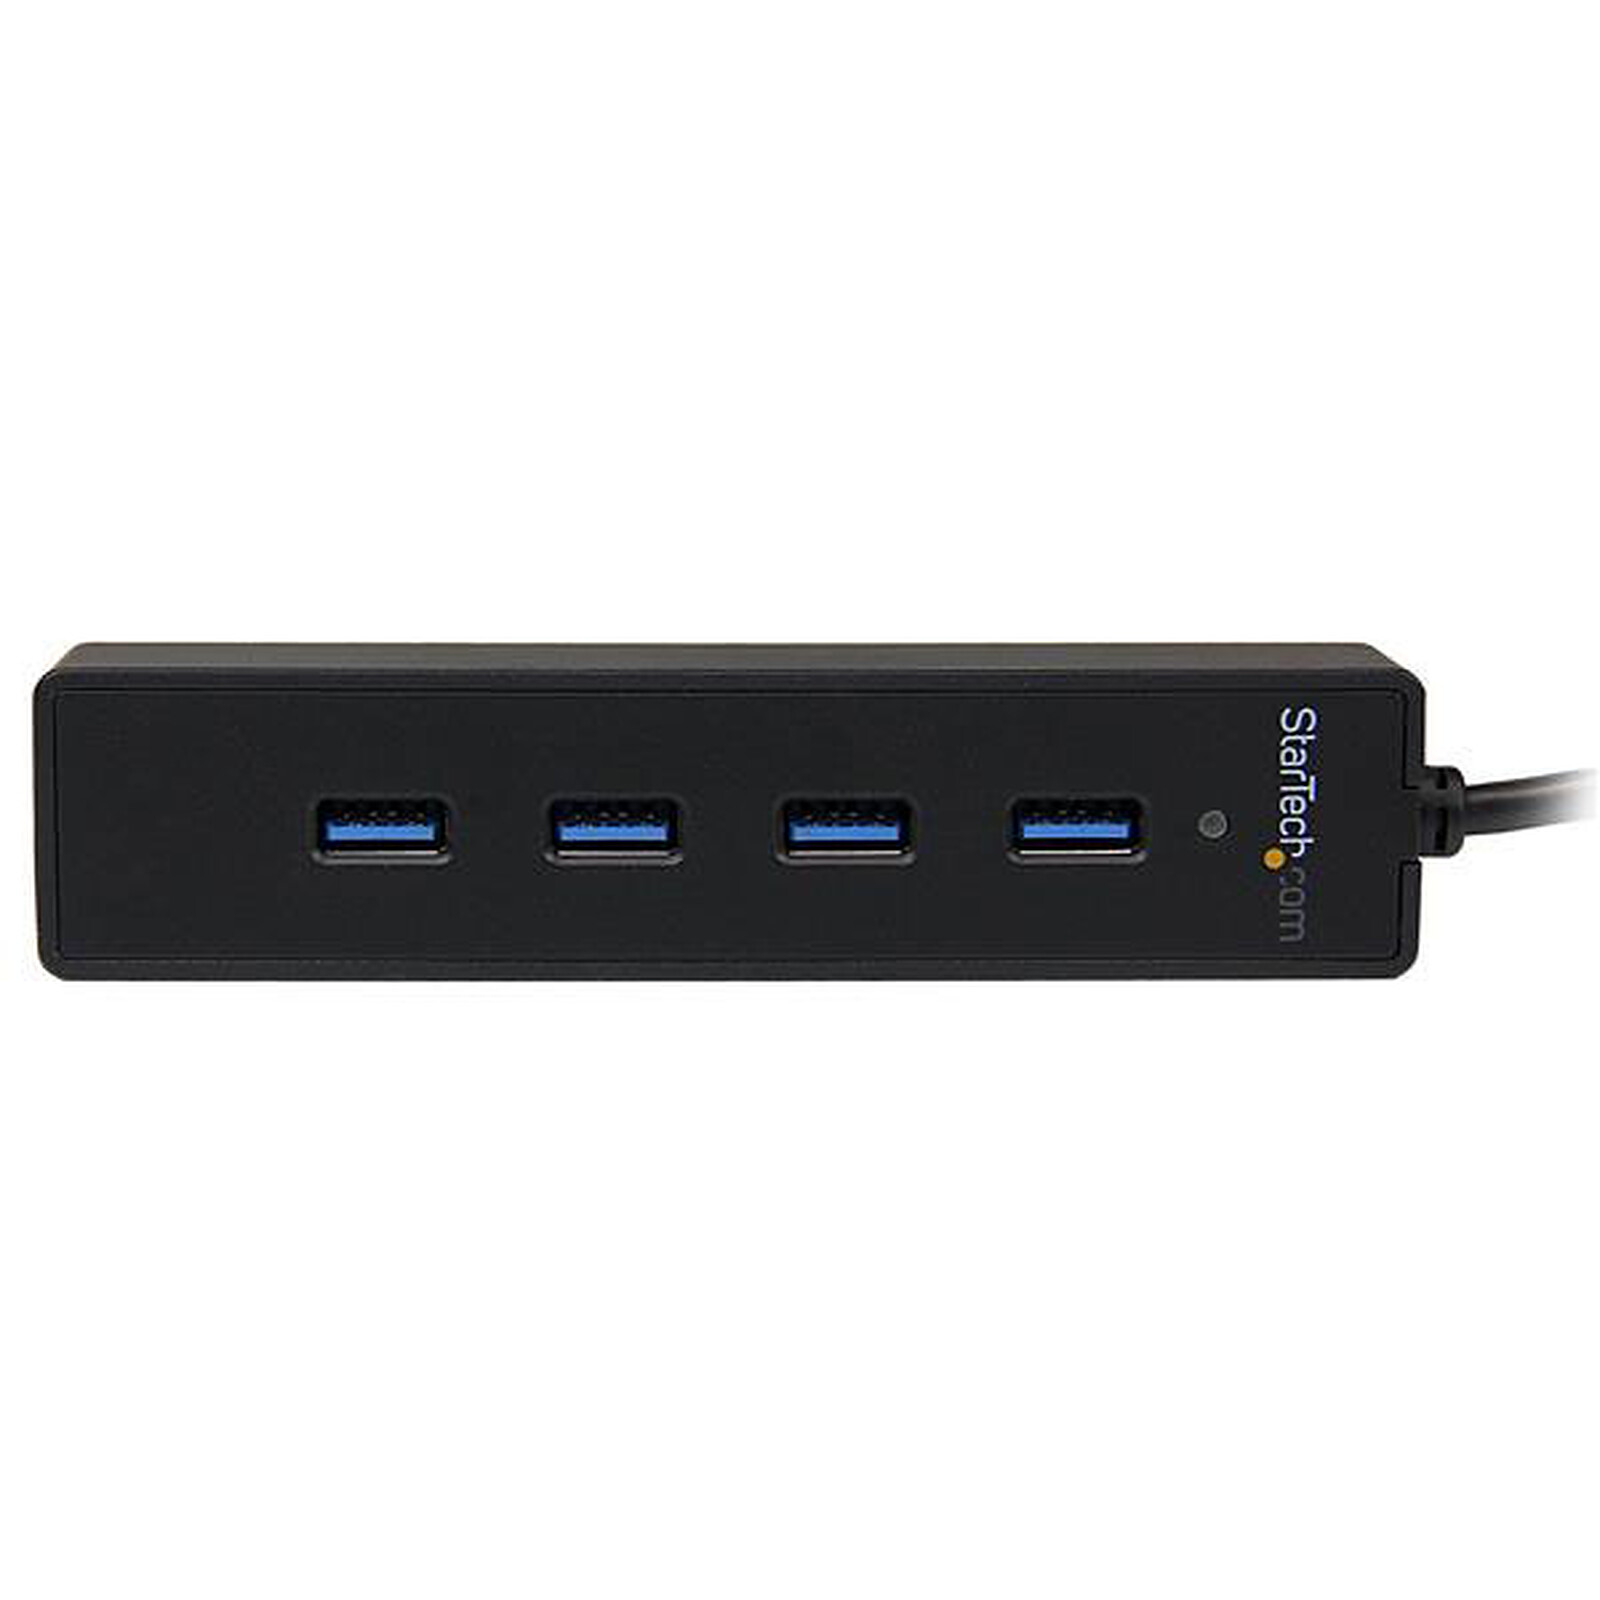 StarTech.com Hub USB 3.0 à 4 ports avec interrupteurs marche/arrêt